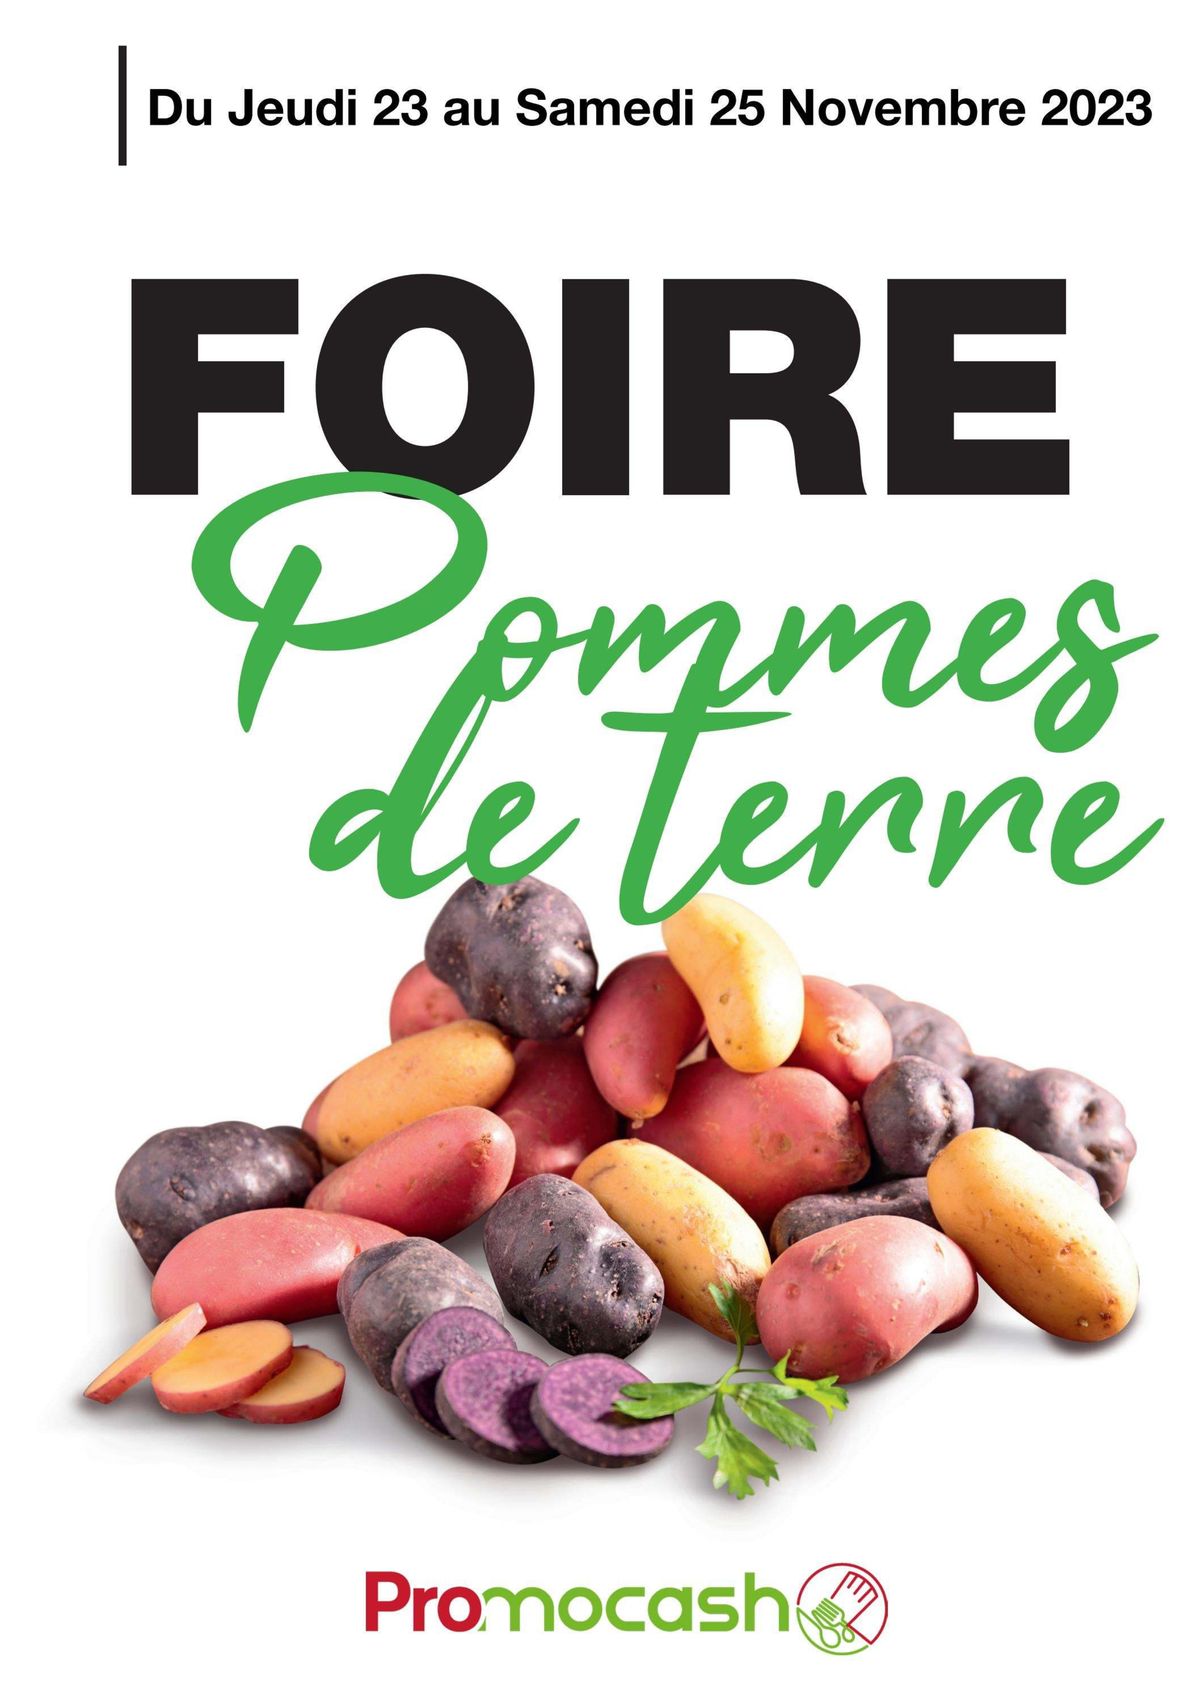 Catalogue Foire Pommes de terre, page 00001